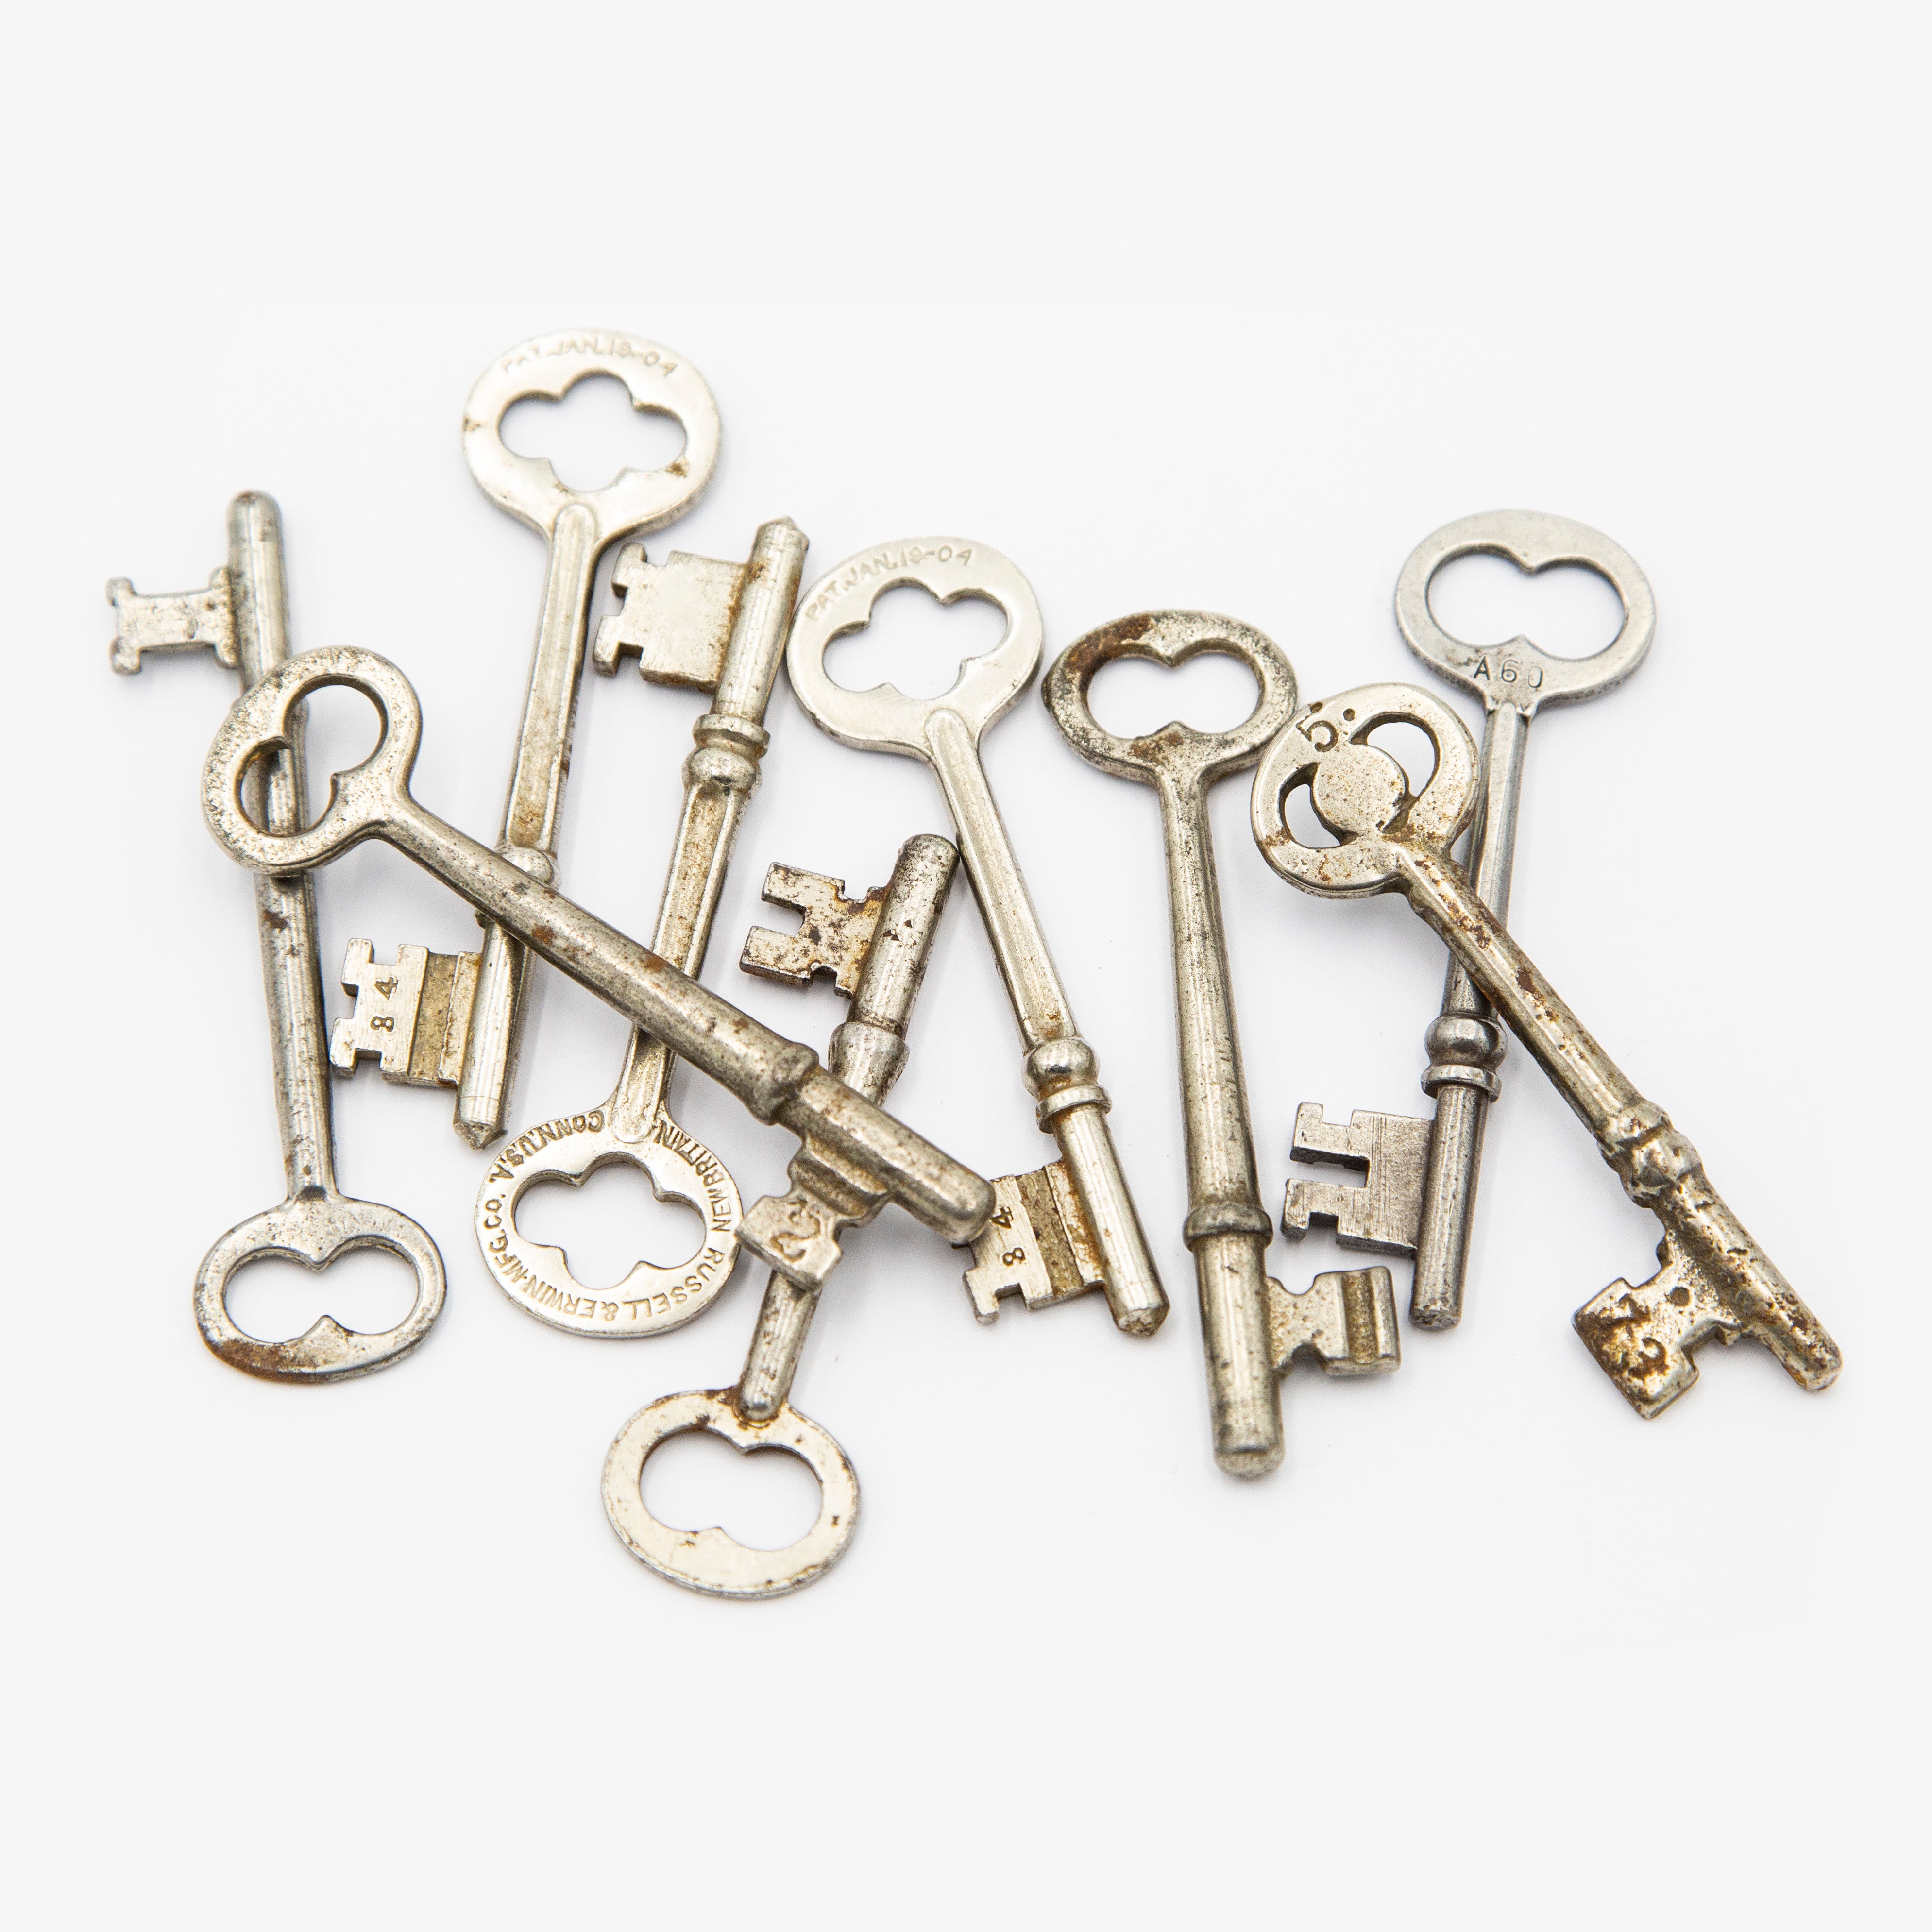 SALE Old Keys Genuine Vintage Keys 10 Antique Skeleton 